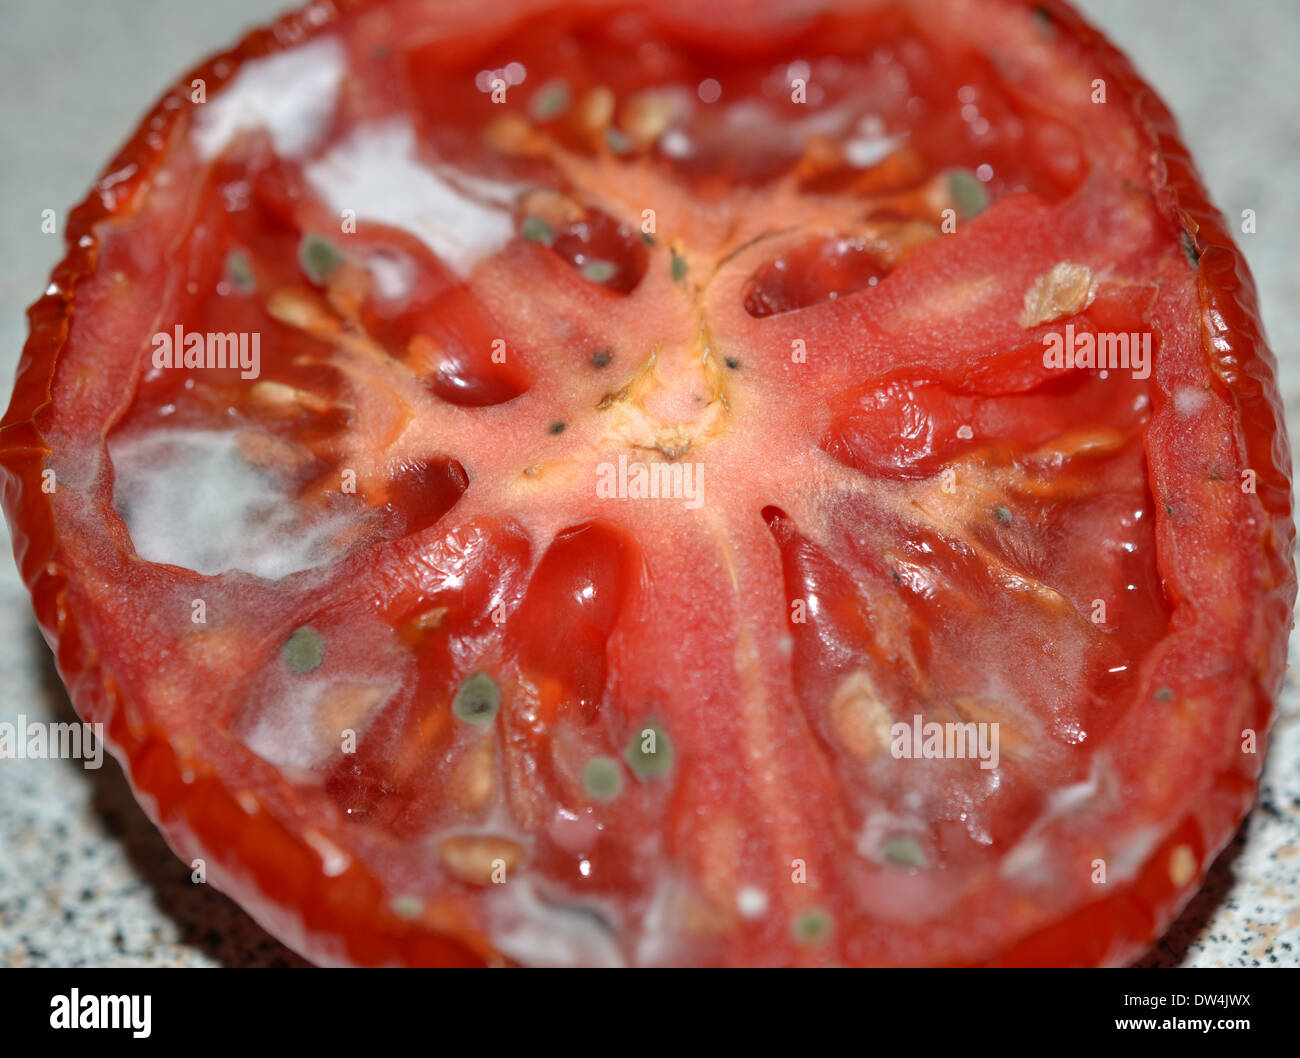 old moldy rotten tomato Stock Photo